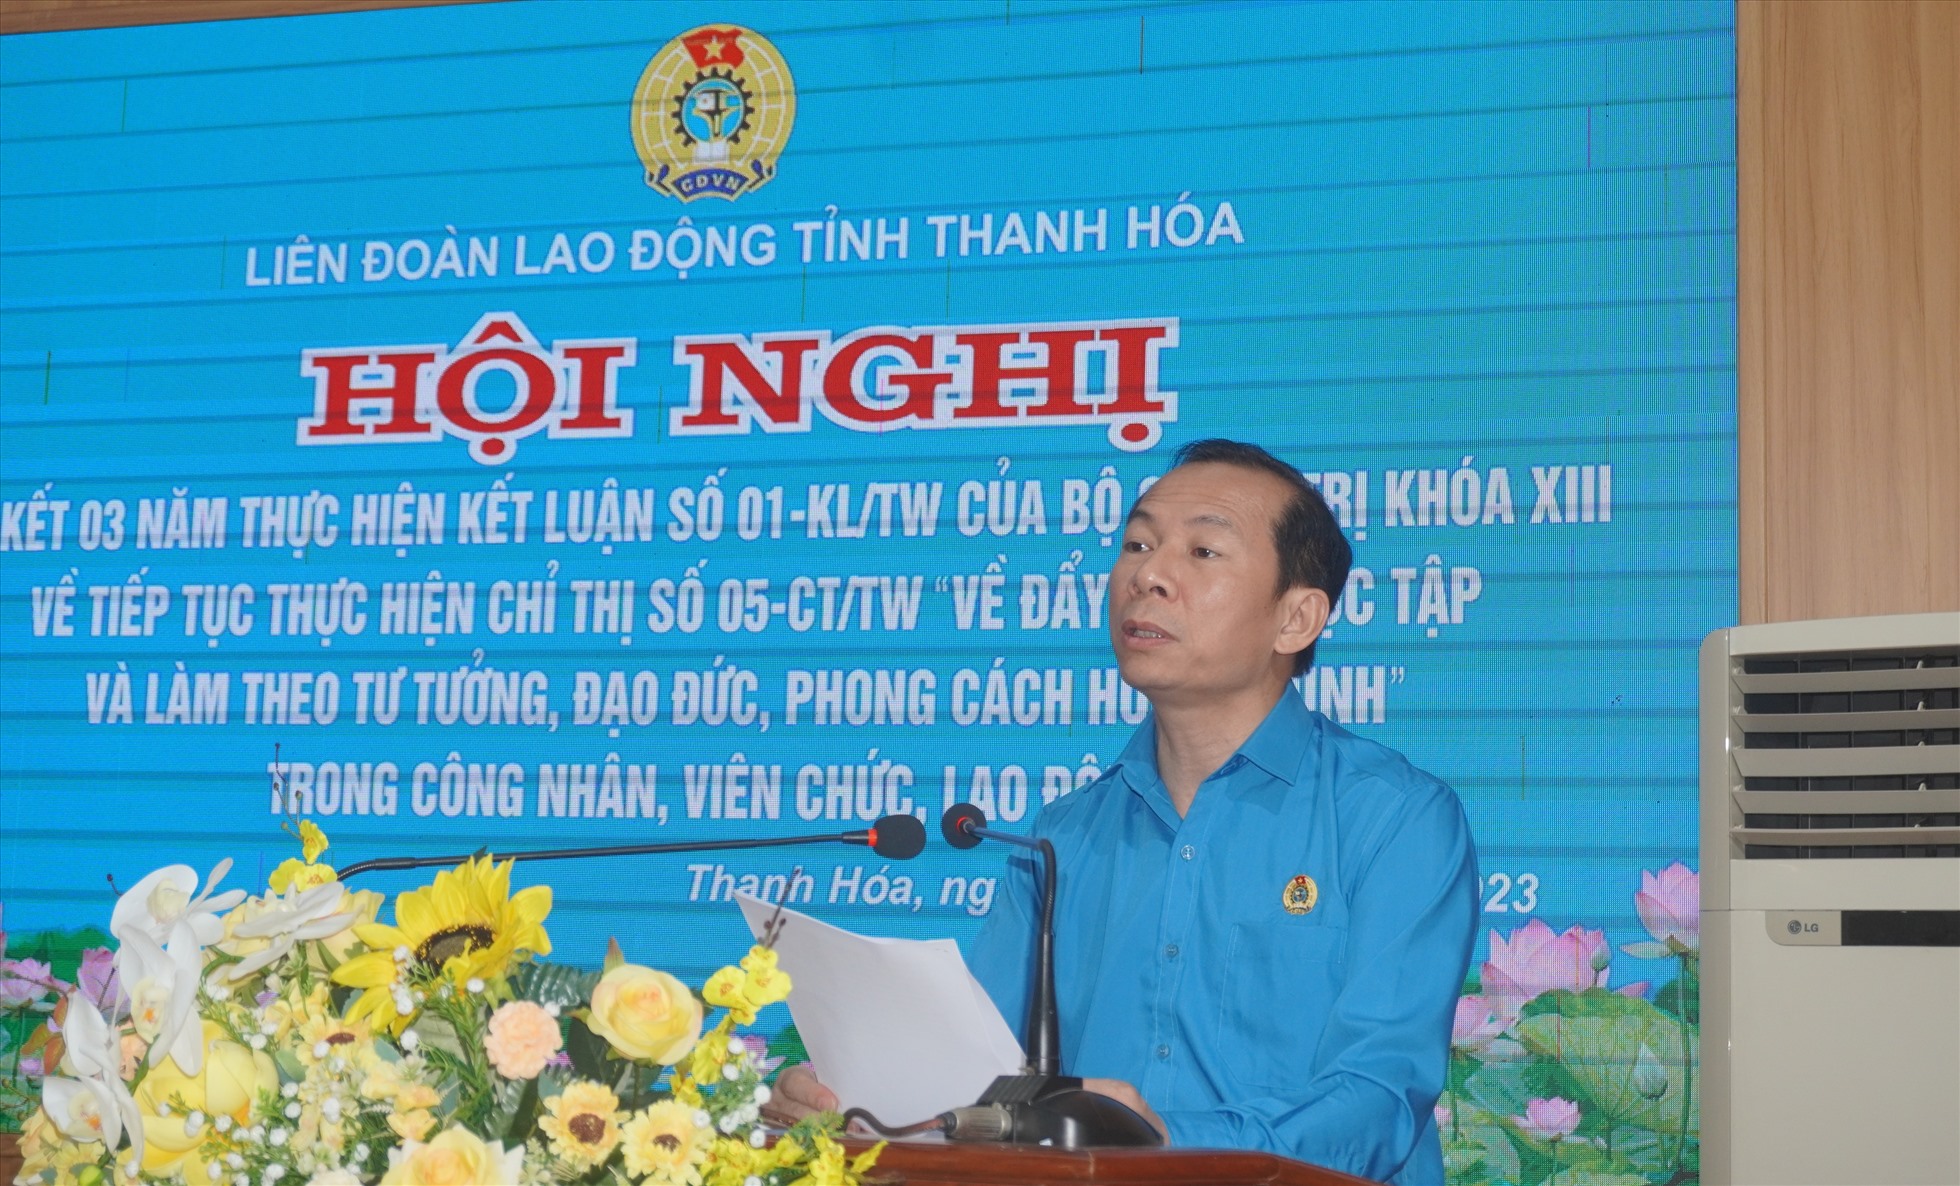 Đồng chí Võ Mạnh Sơn - Chủ tịch LĐLĐ tỉnh Thanh Hóa phát biểu khai mạc hội nghị. Ảnh: Quách Du